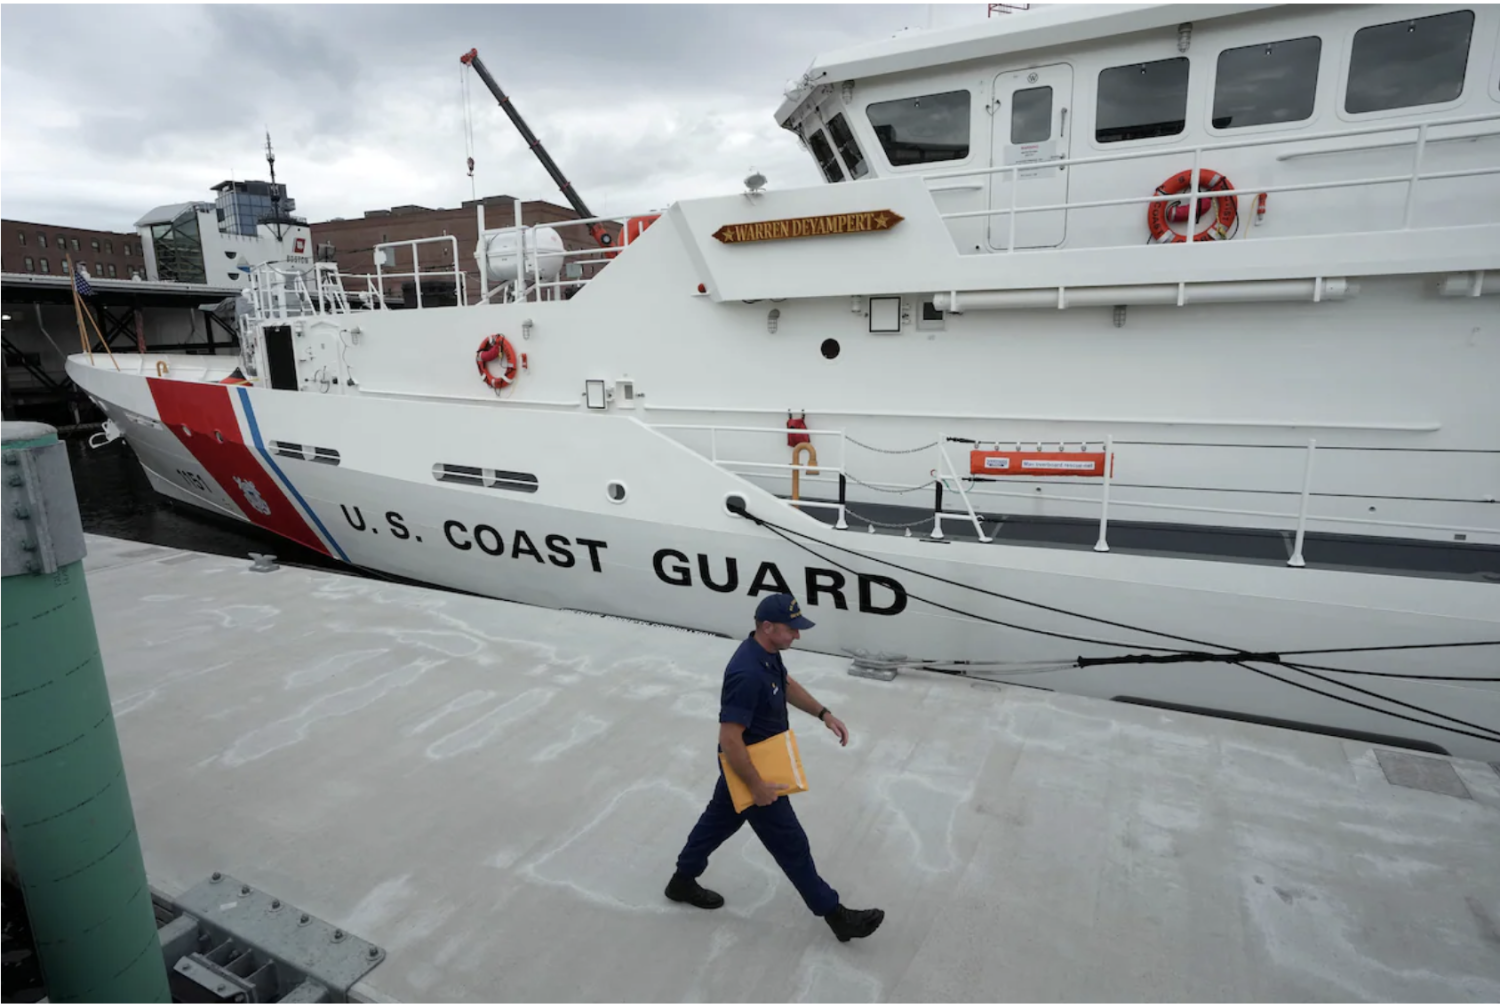 The U.S. Coast Guard Cutter Warren Deyampert is seen docked on Tuesday at U.S. Coast Guard Base Boston. (Steven Senne/AP)